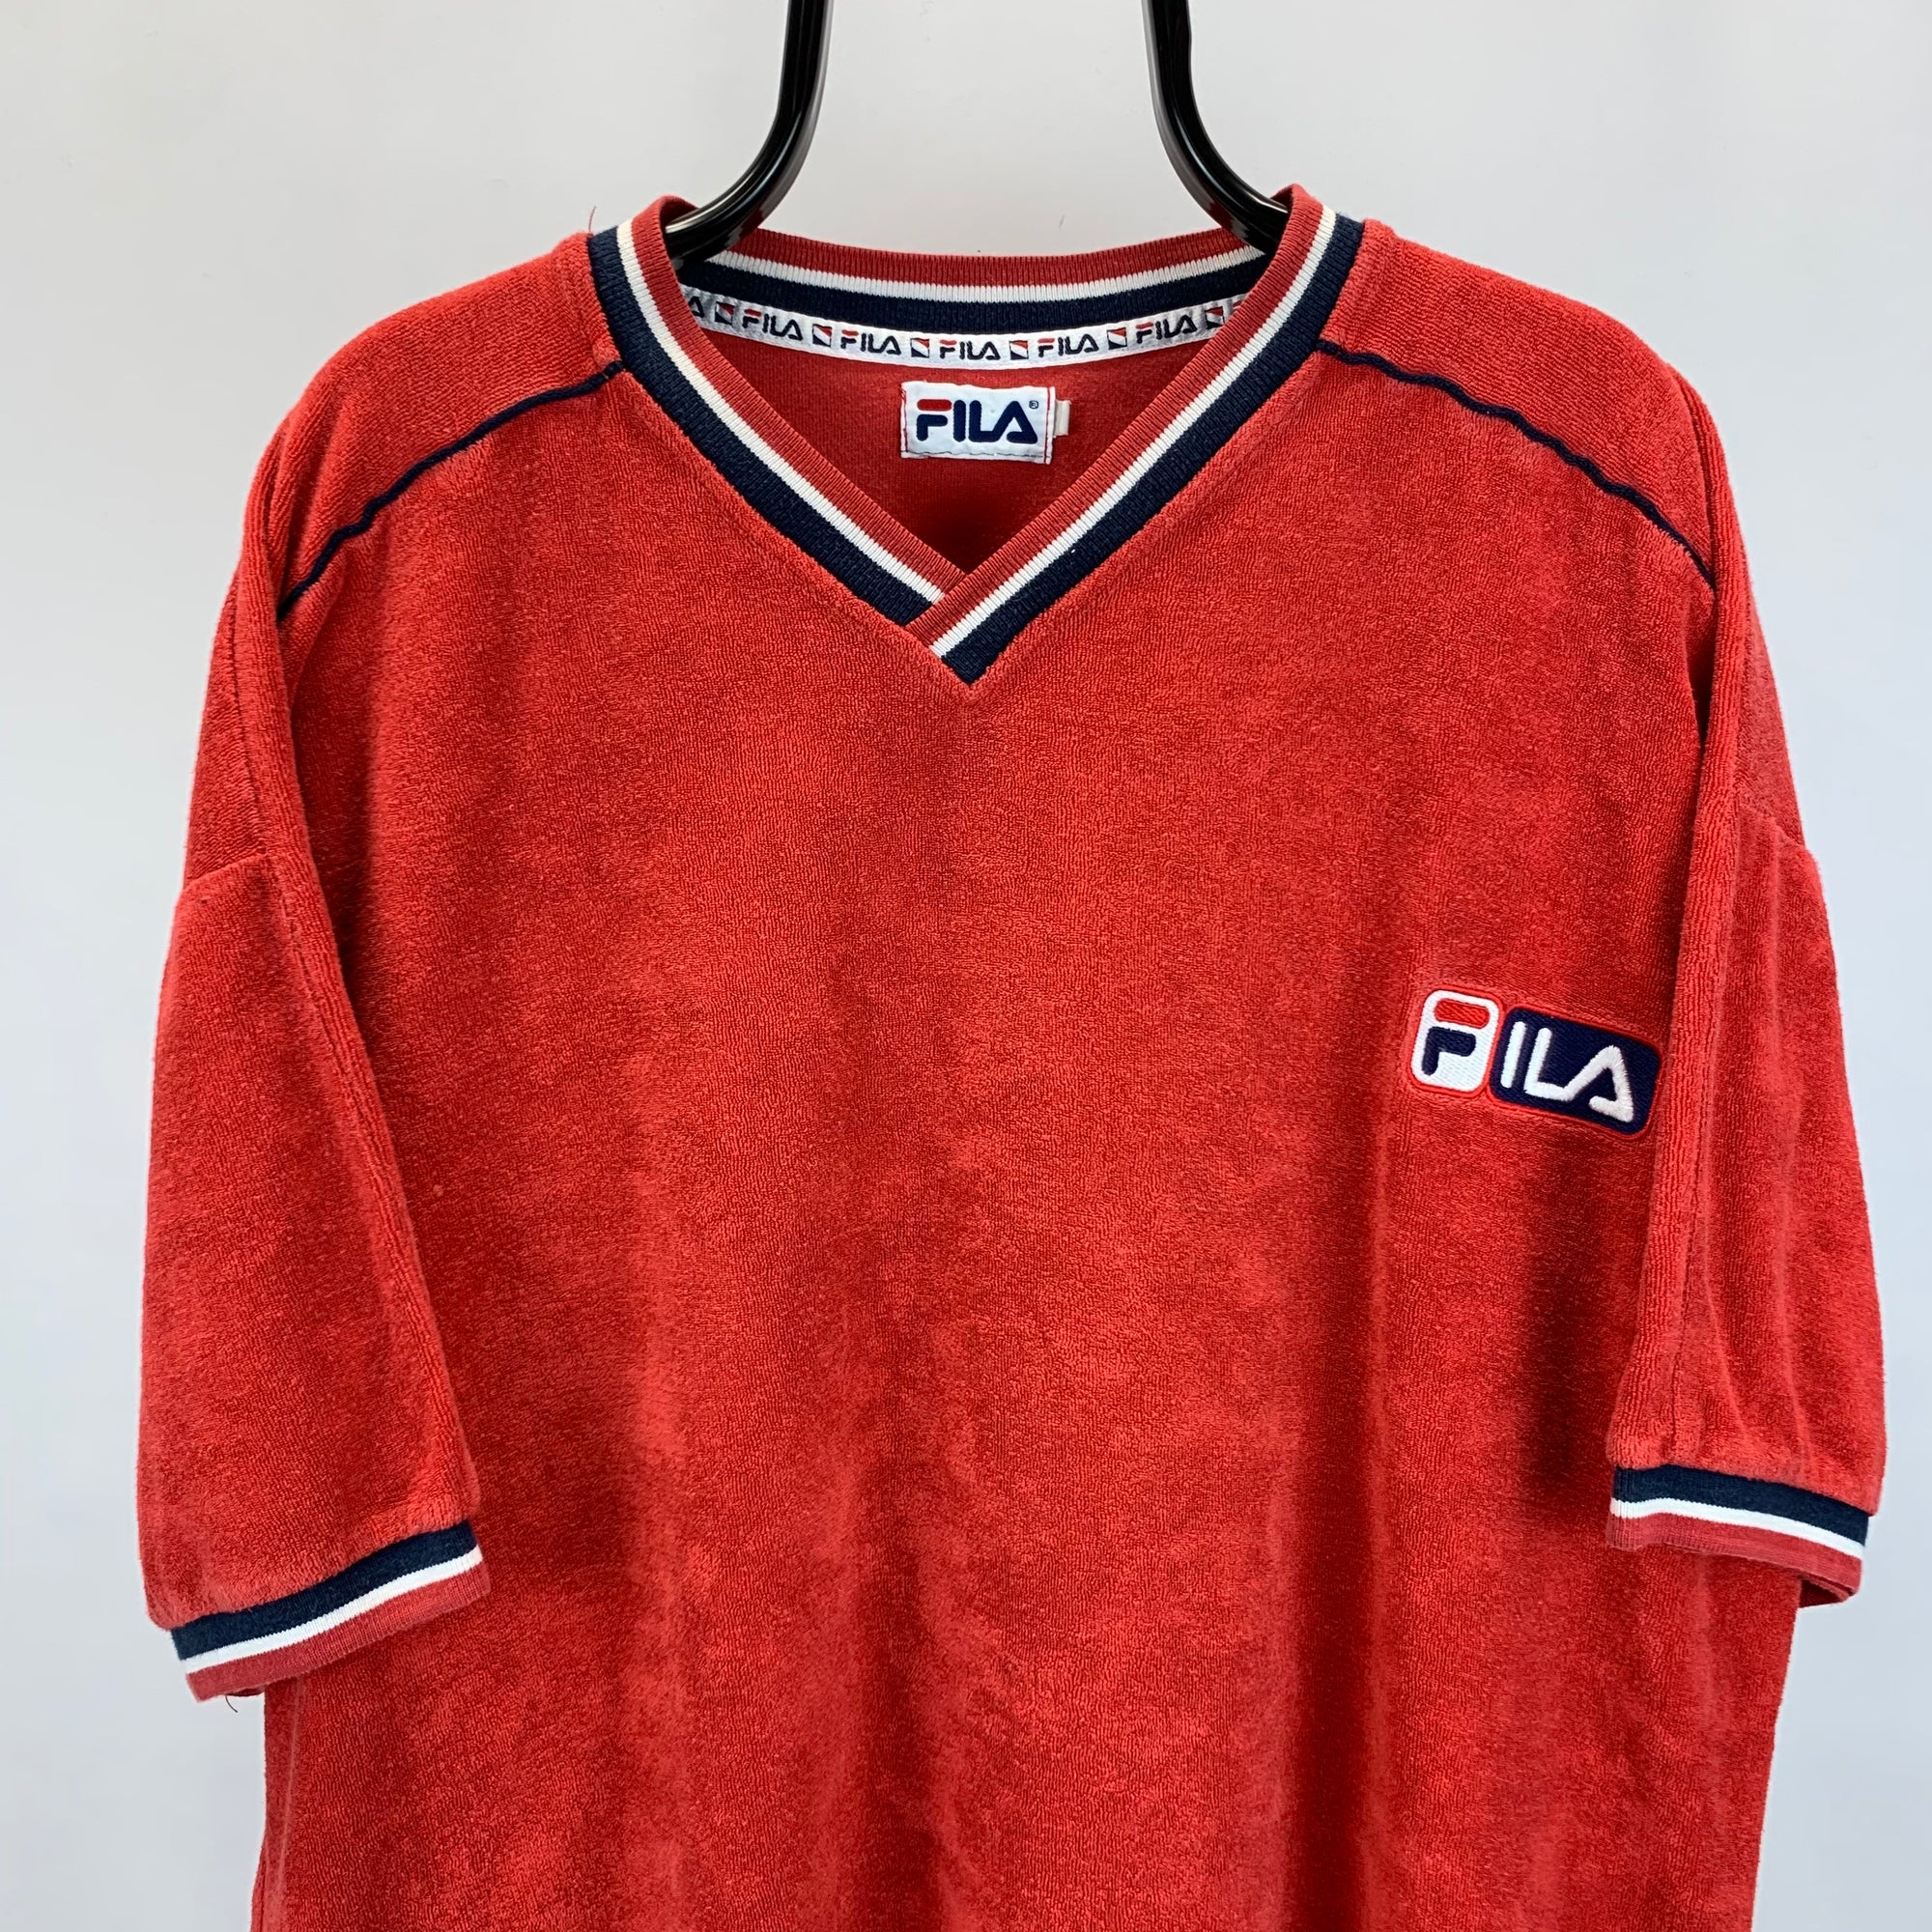 Vintage 90s Fila Terry Towel T-Shirt - Men's Large/Women's XL